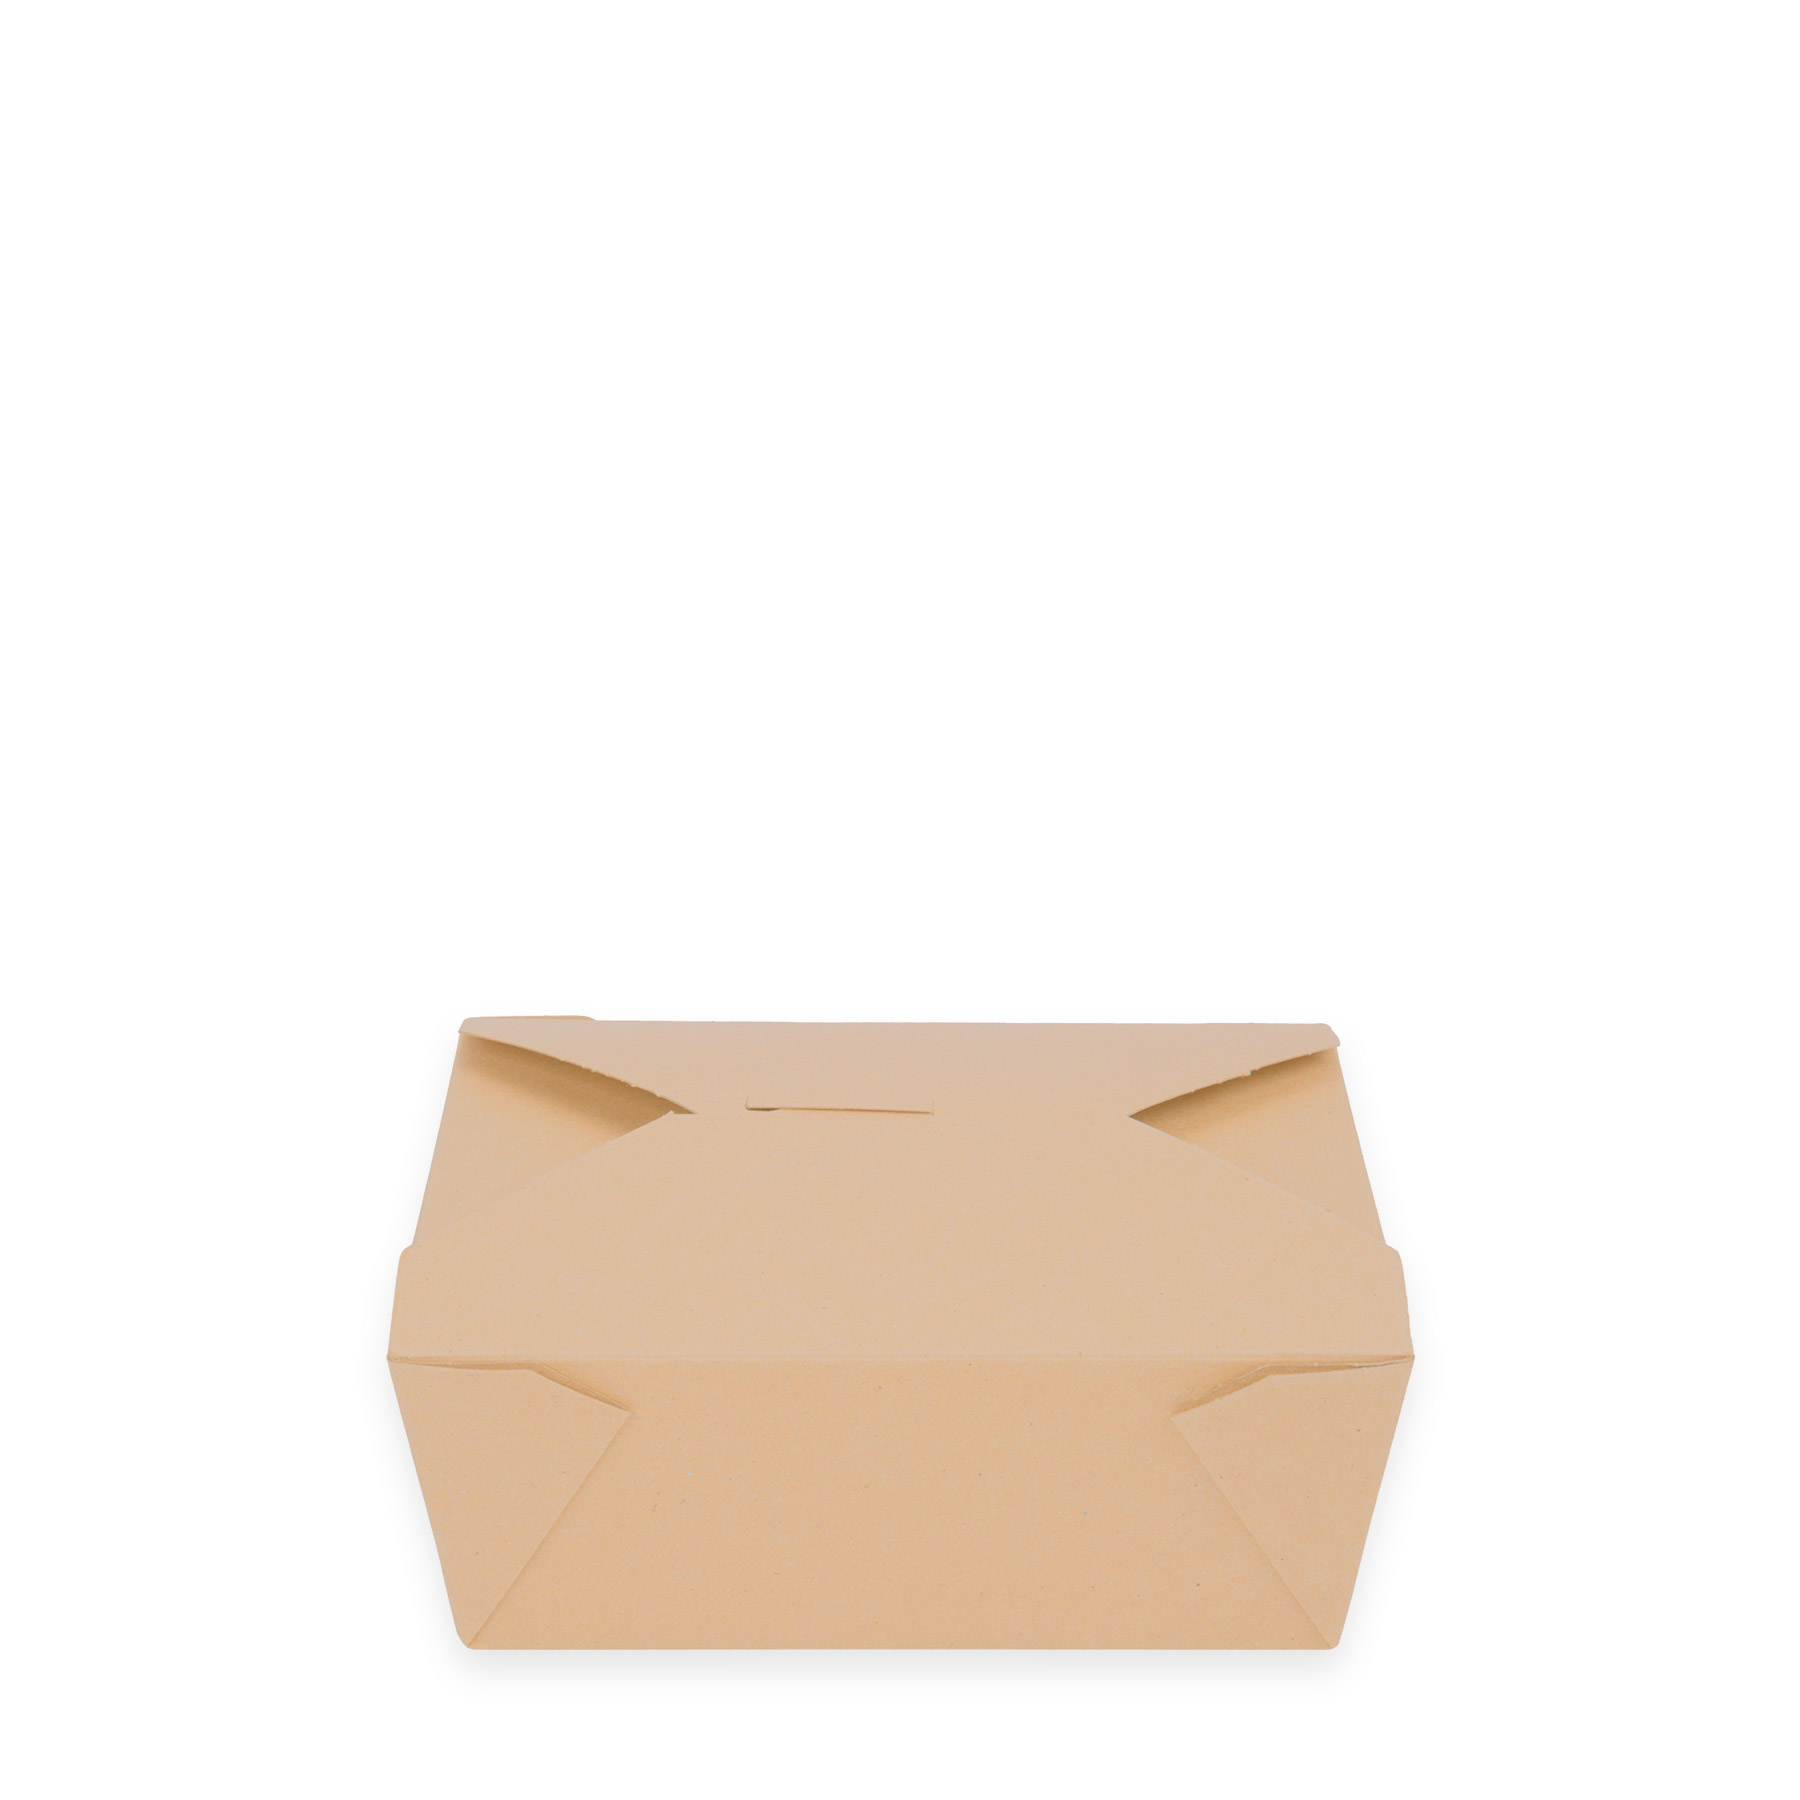 6 x 4.75 x 2.5  Food Box (Kraft) 300 per case – Green Safe Products